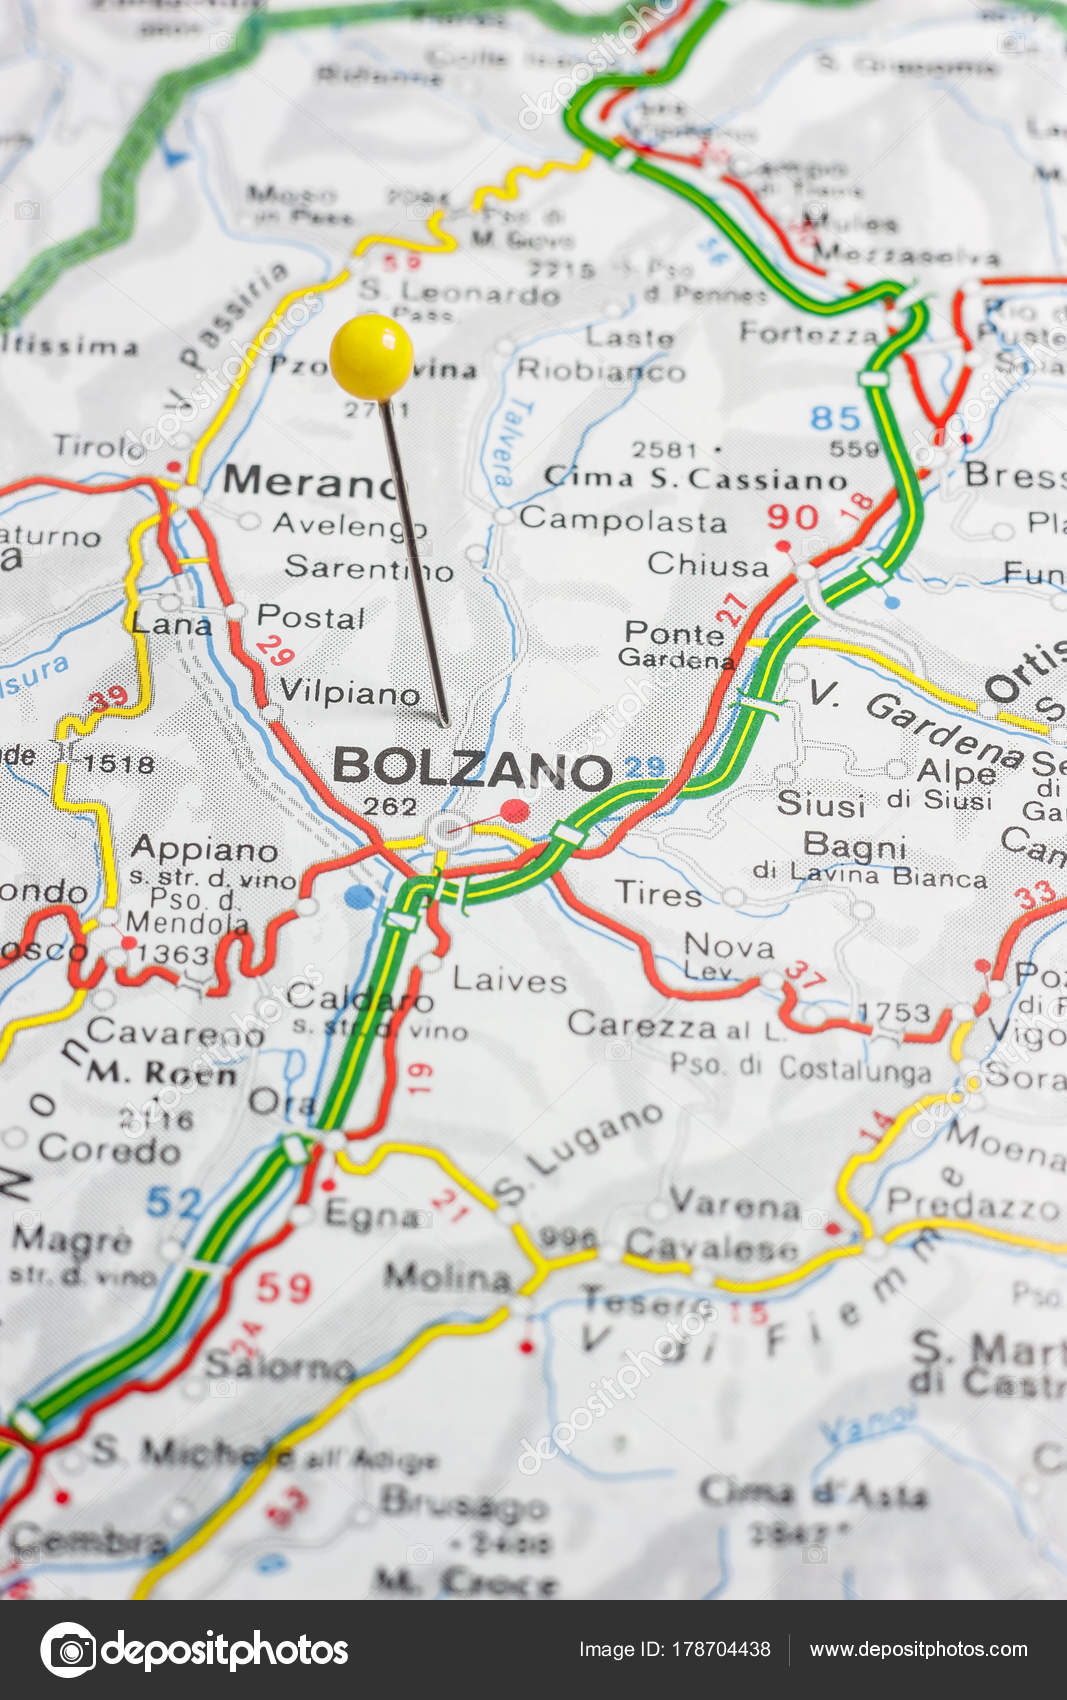 bolzano karta Bolzano fästs på en karta över Italien — Stockfotografi © maior  bolzano karta